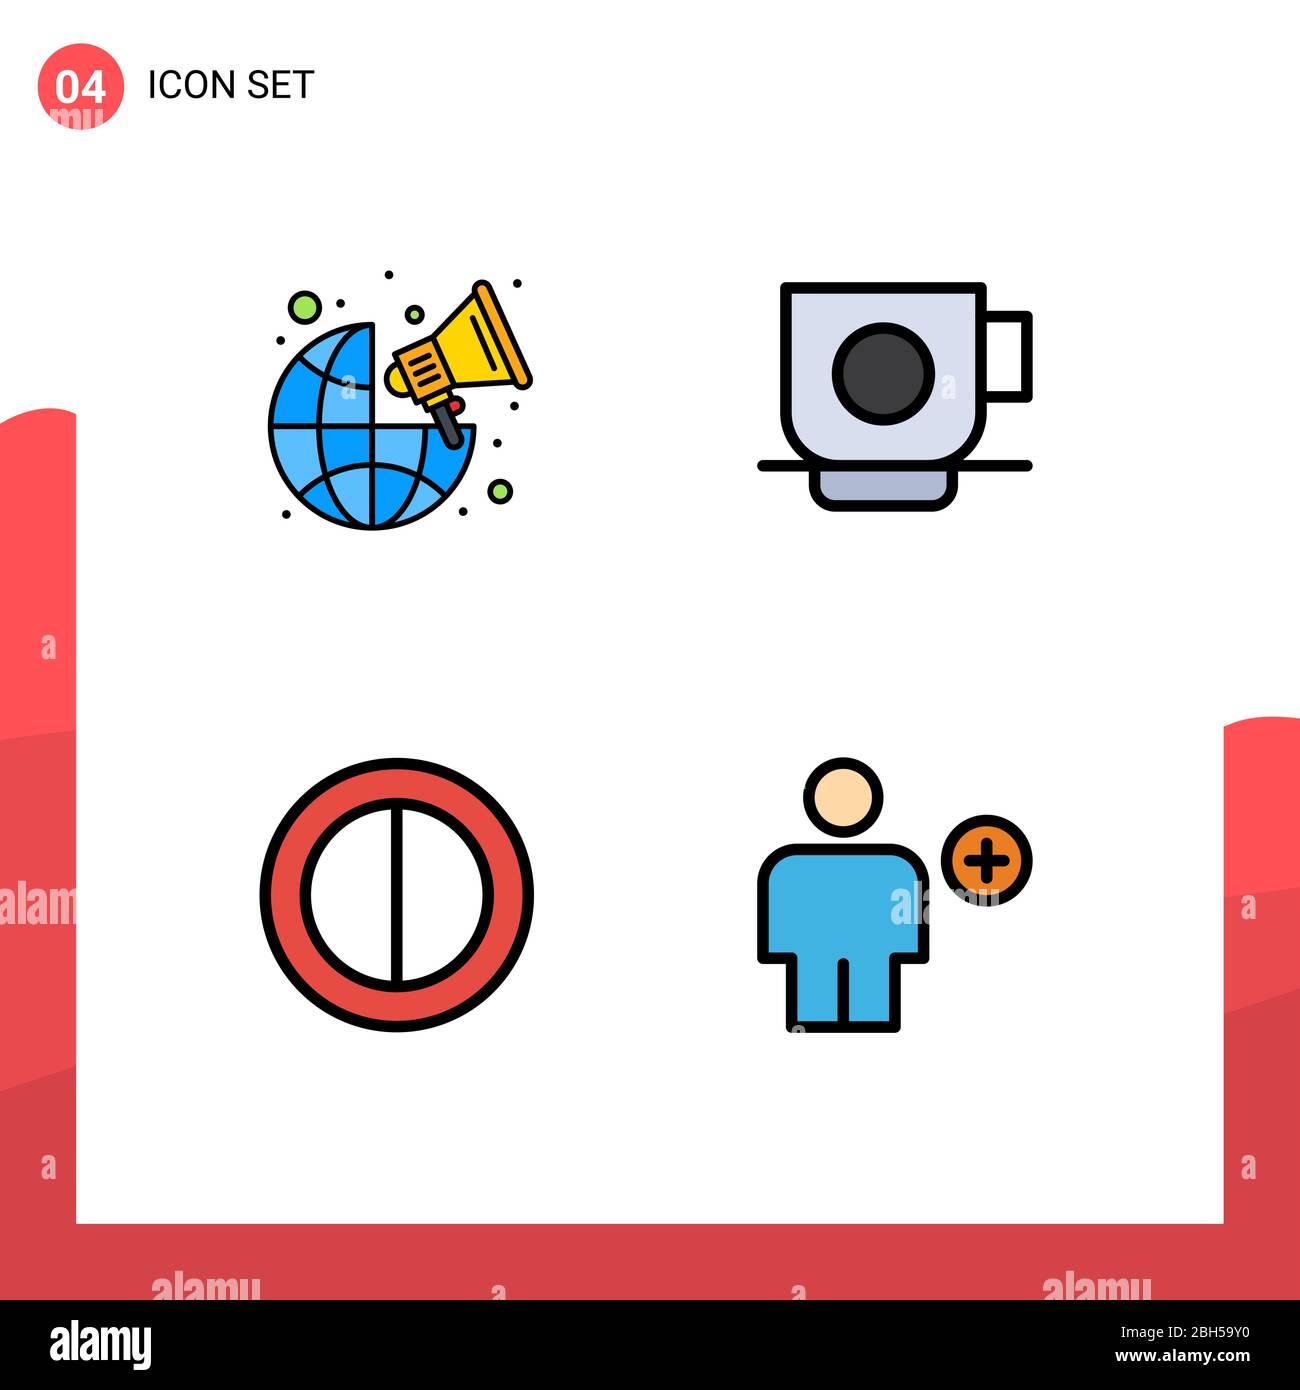 Ensemble de 4 icônes d'interface utilisateur modernes symboles signes pour la diffusion, le contraste, le monde entier, tasse, avatar Editable Vector Design Elements Illustration de Vecteur